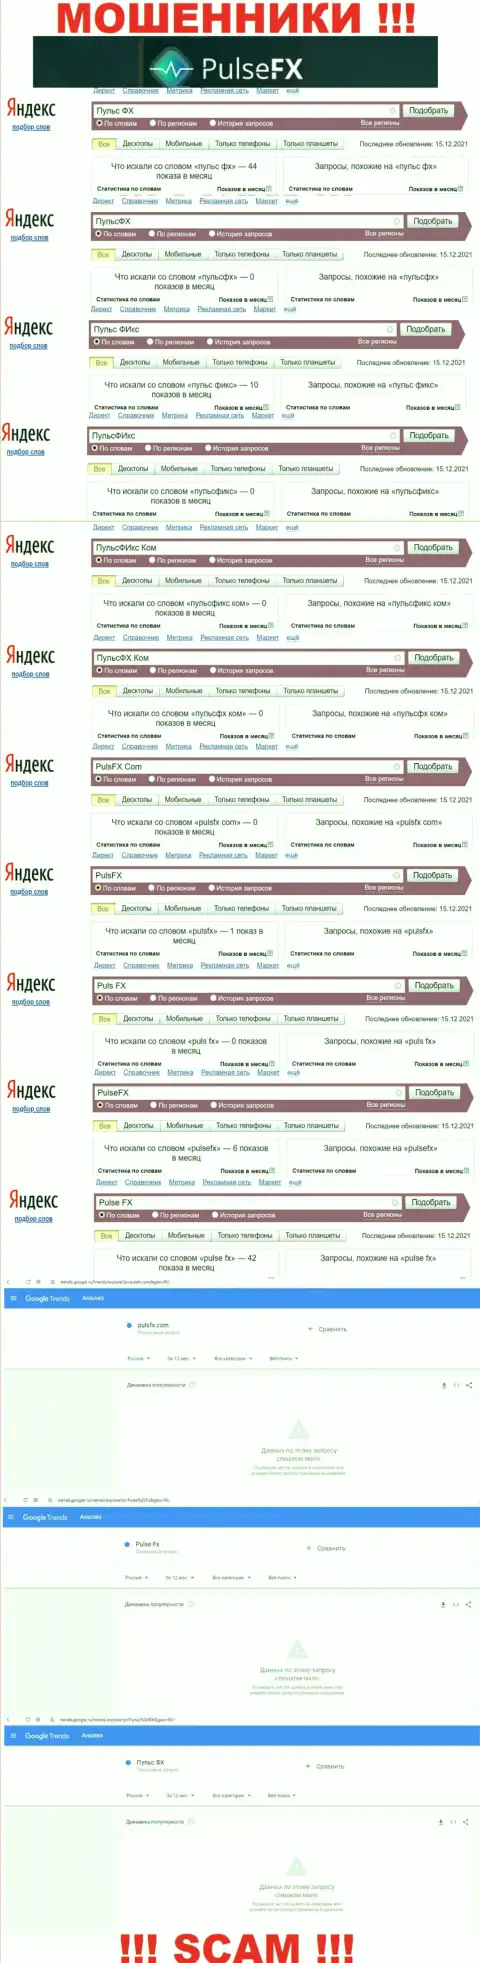 Число поисковых запросов в сети Интернет по бренду мошенников PulseFX